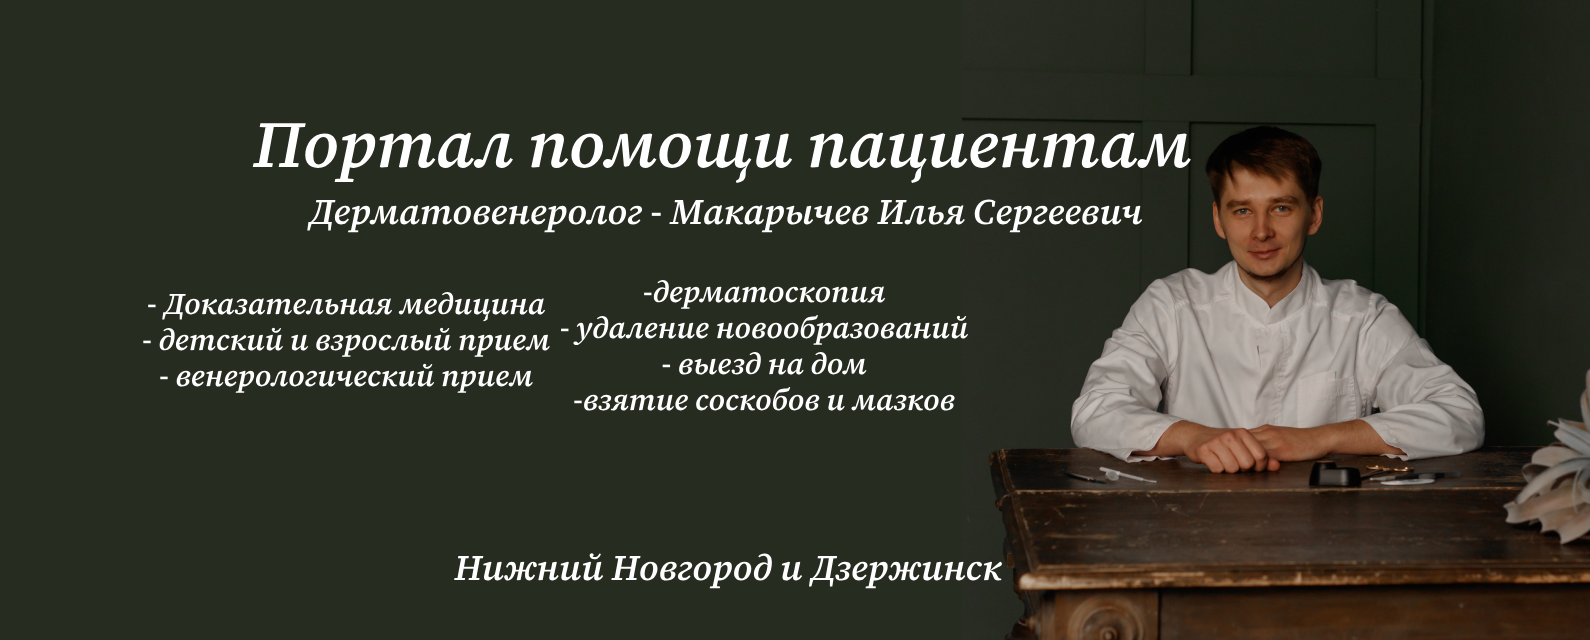 Макарычев Илья Сергеевич дерматовенеролог